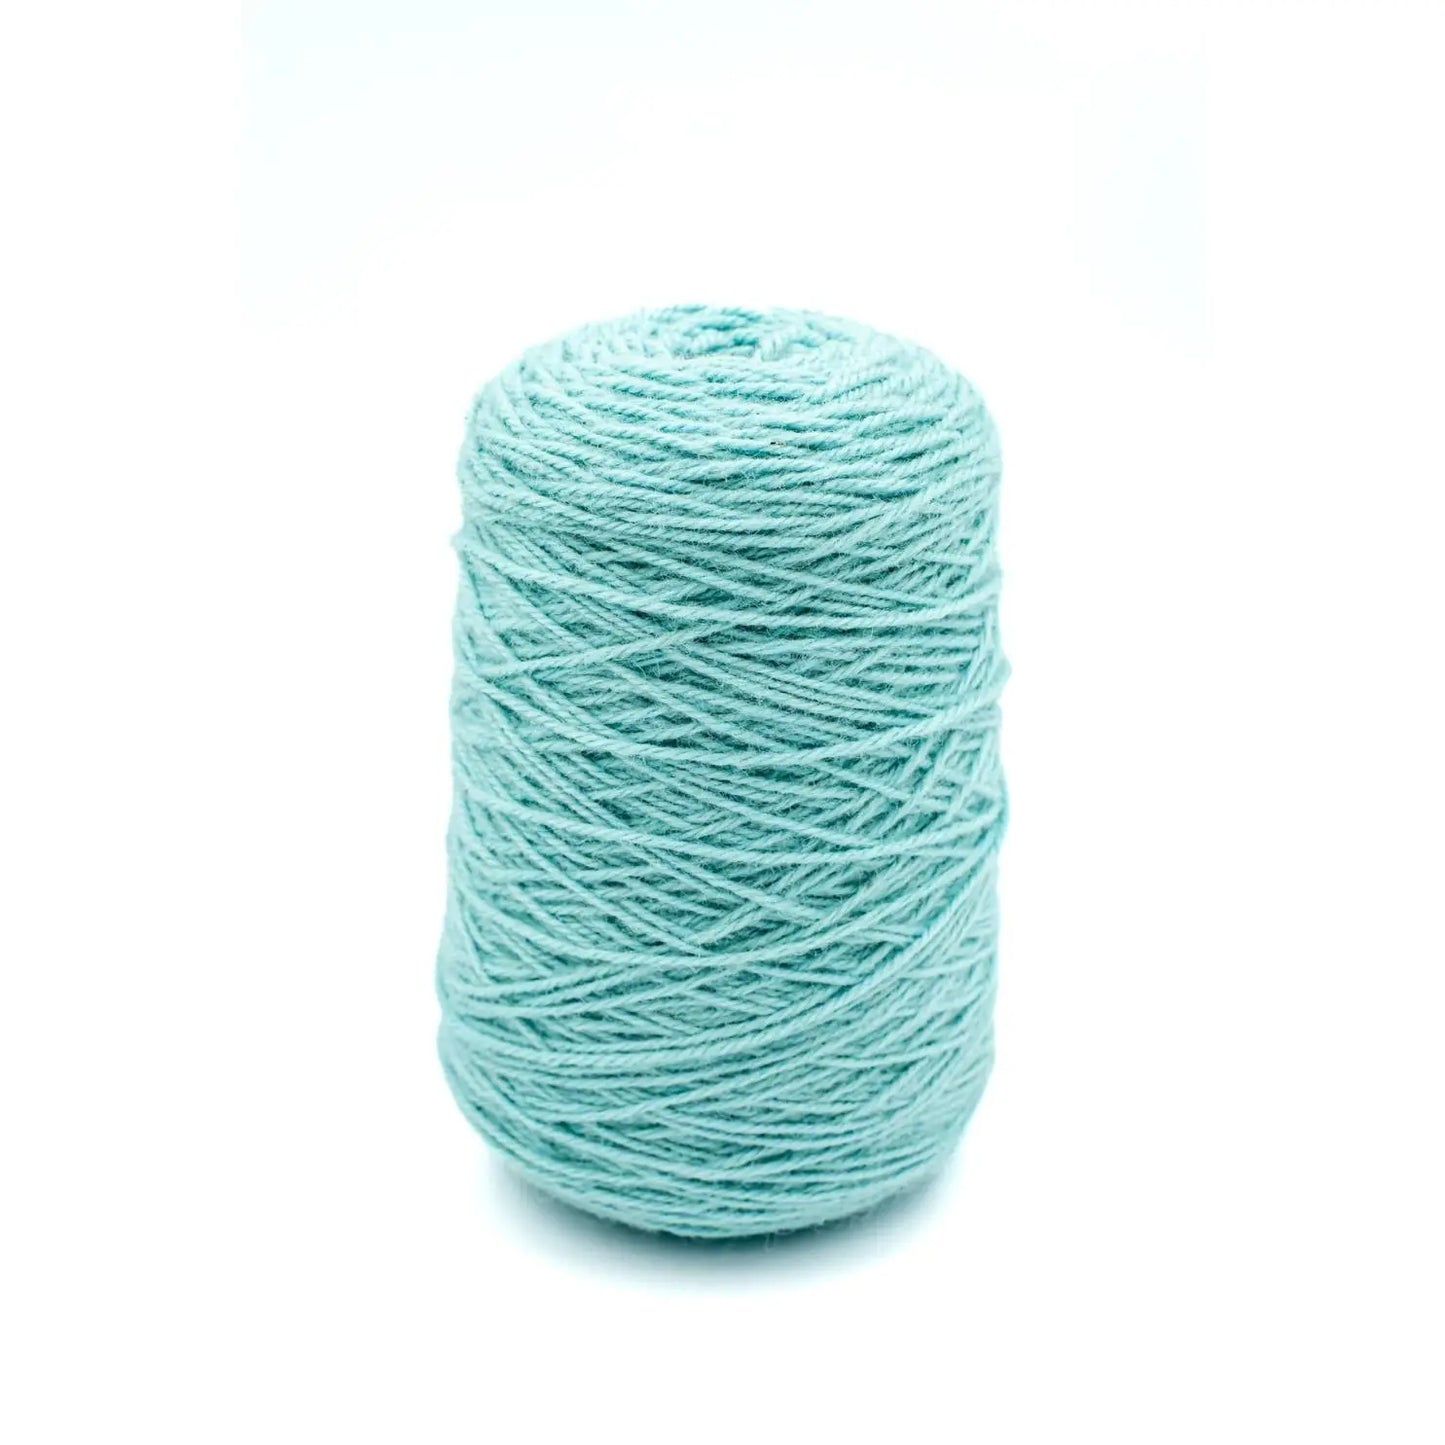 Powder Blue Wool Yarn